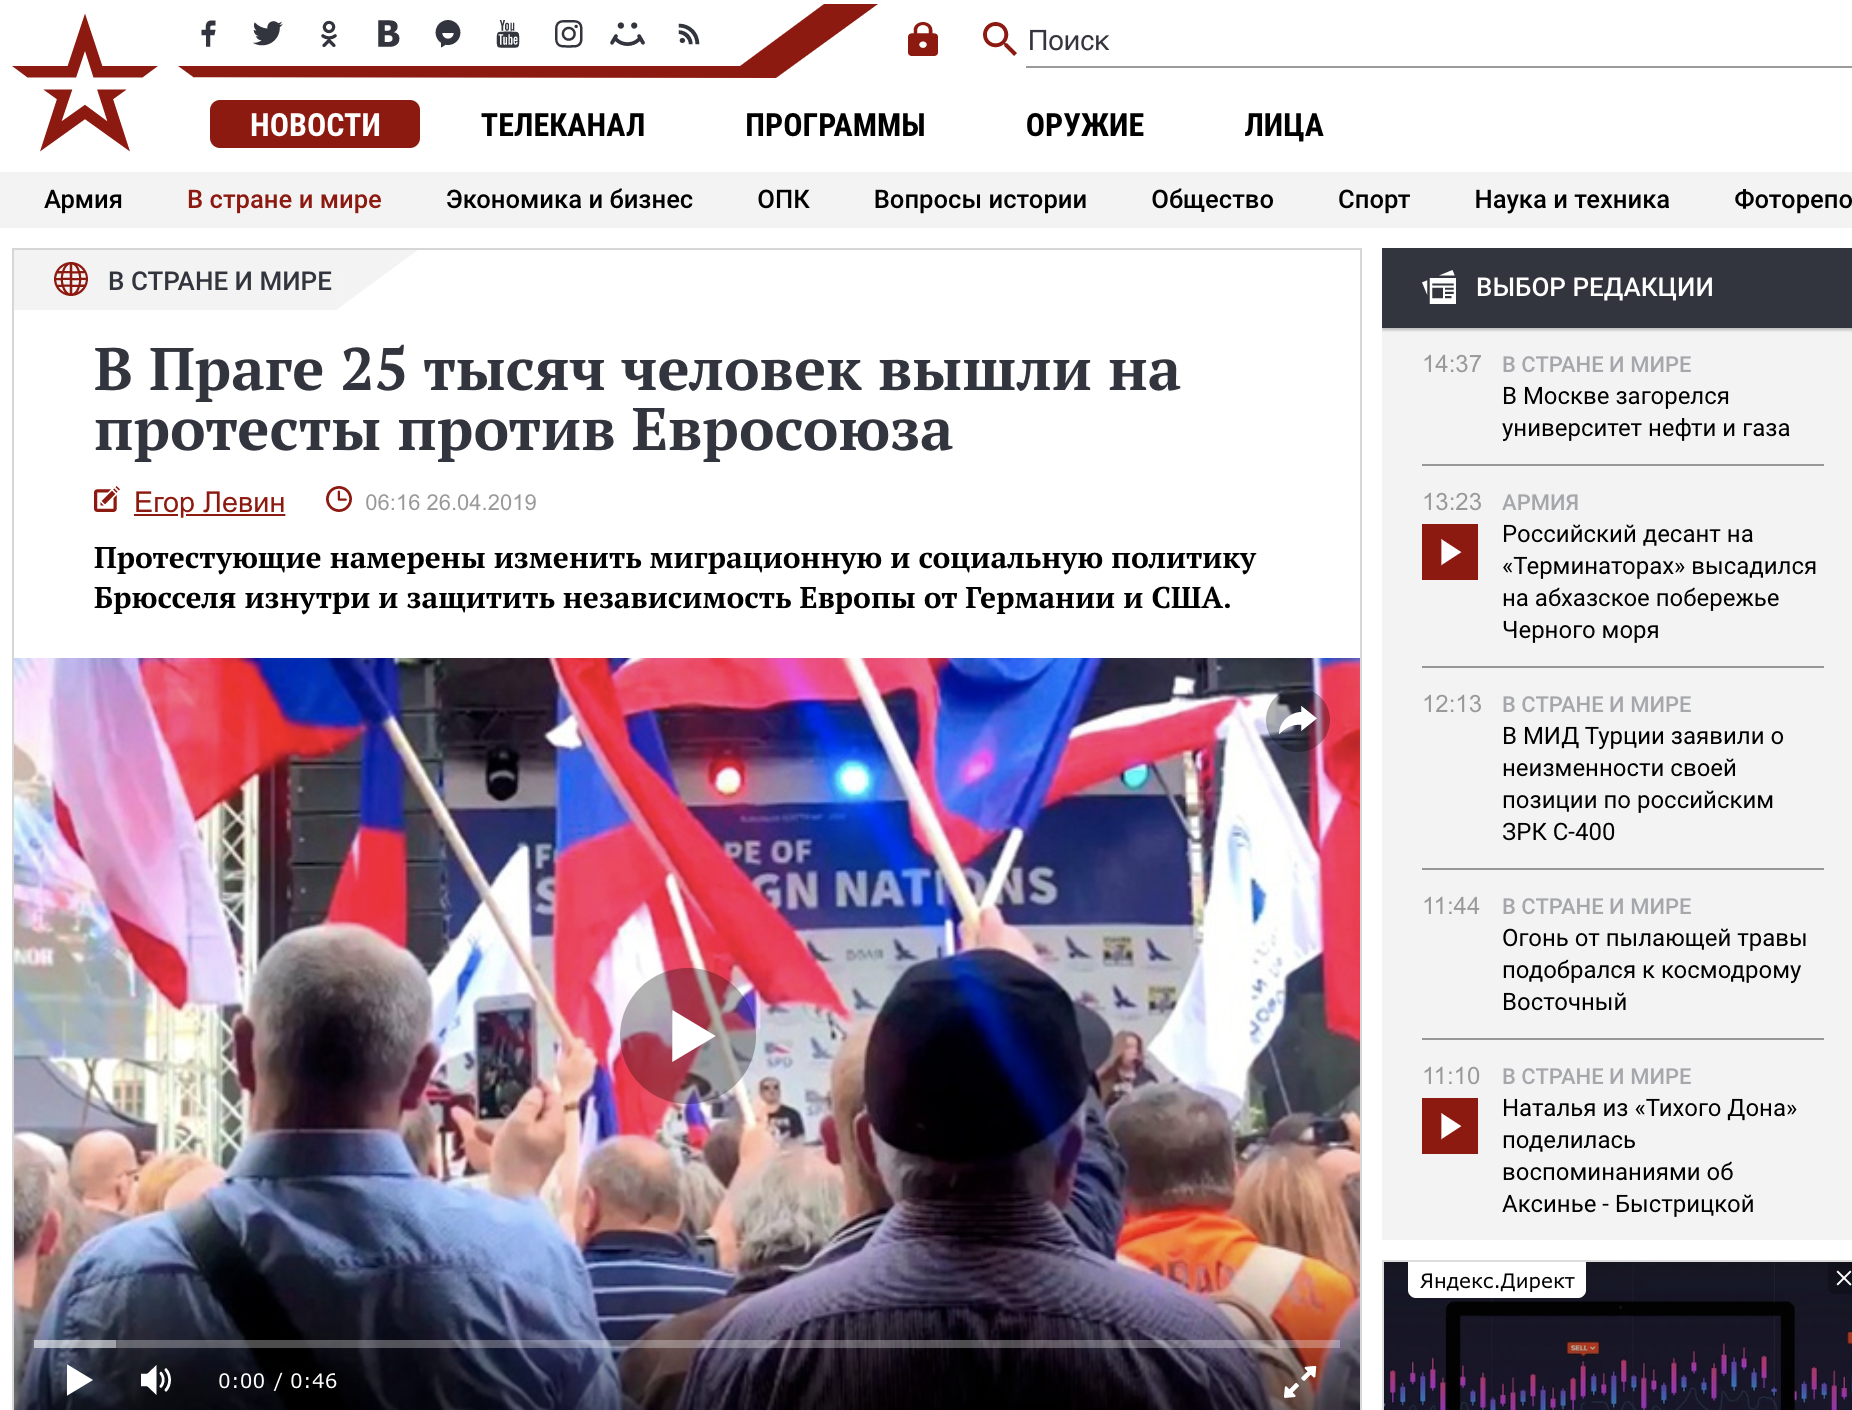 Orosz dezinformáció: a Zvezda Tv weboldala szerint több mint 25 ezer tüntetett Prágában. Hatszázan voltak kint a rendezvényen.